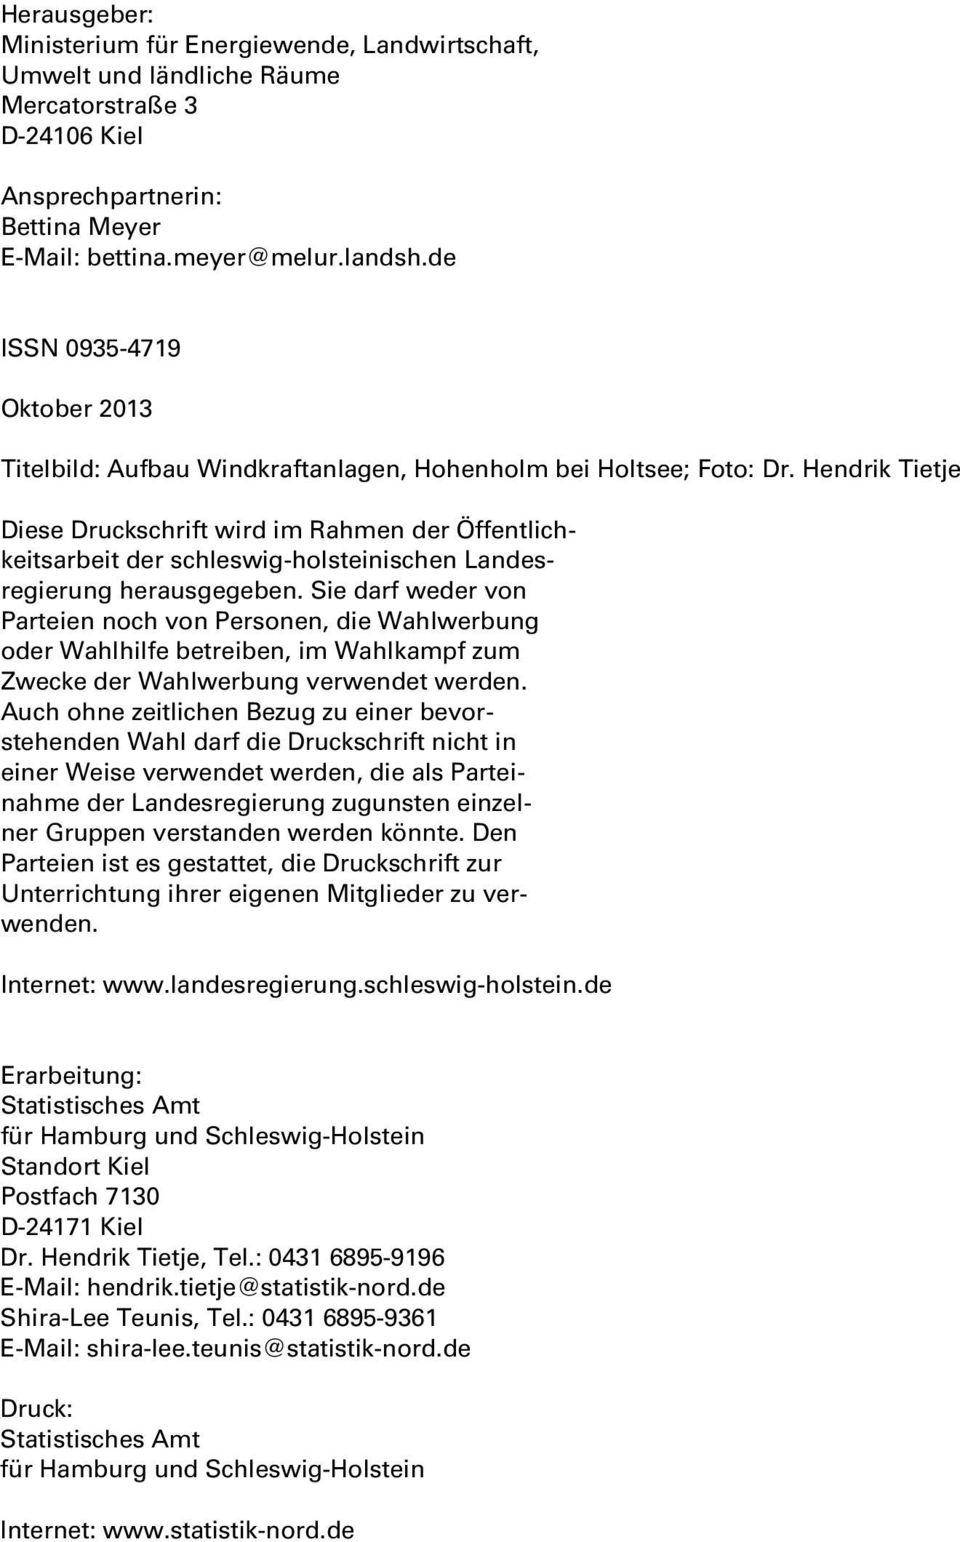 Hendrik Tietje Diese Druckschrift wird im Rahmen der Öffentlichkeitsarbeit der schleswig-holsteinischen Landesregierung herausgegeben.